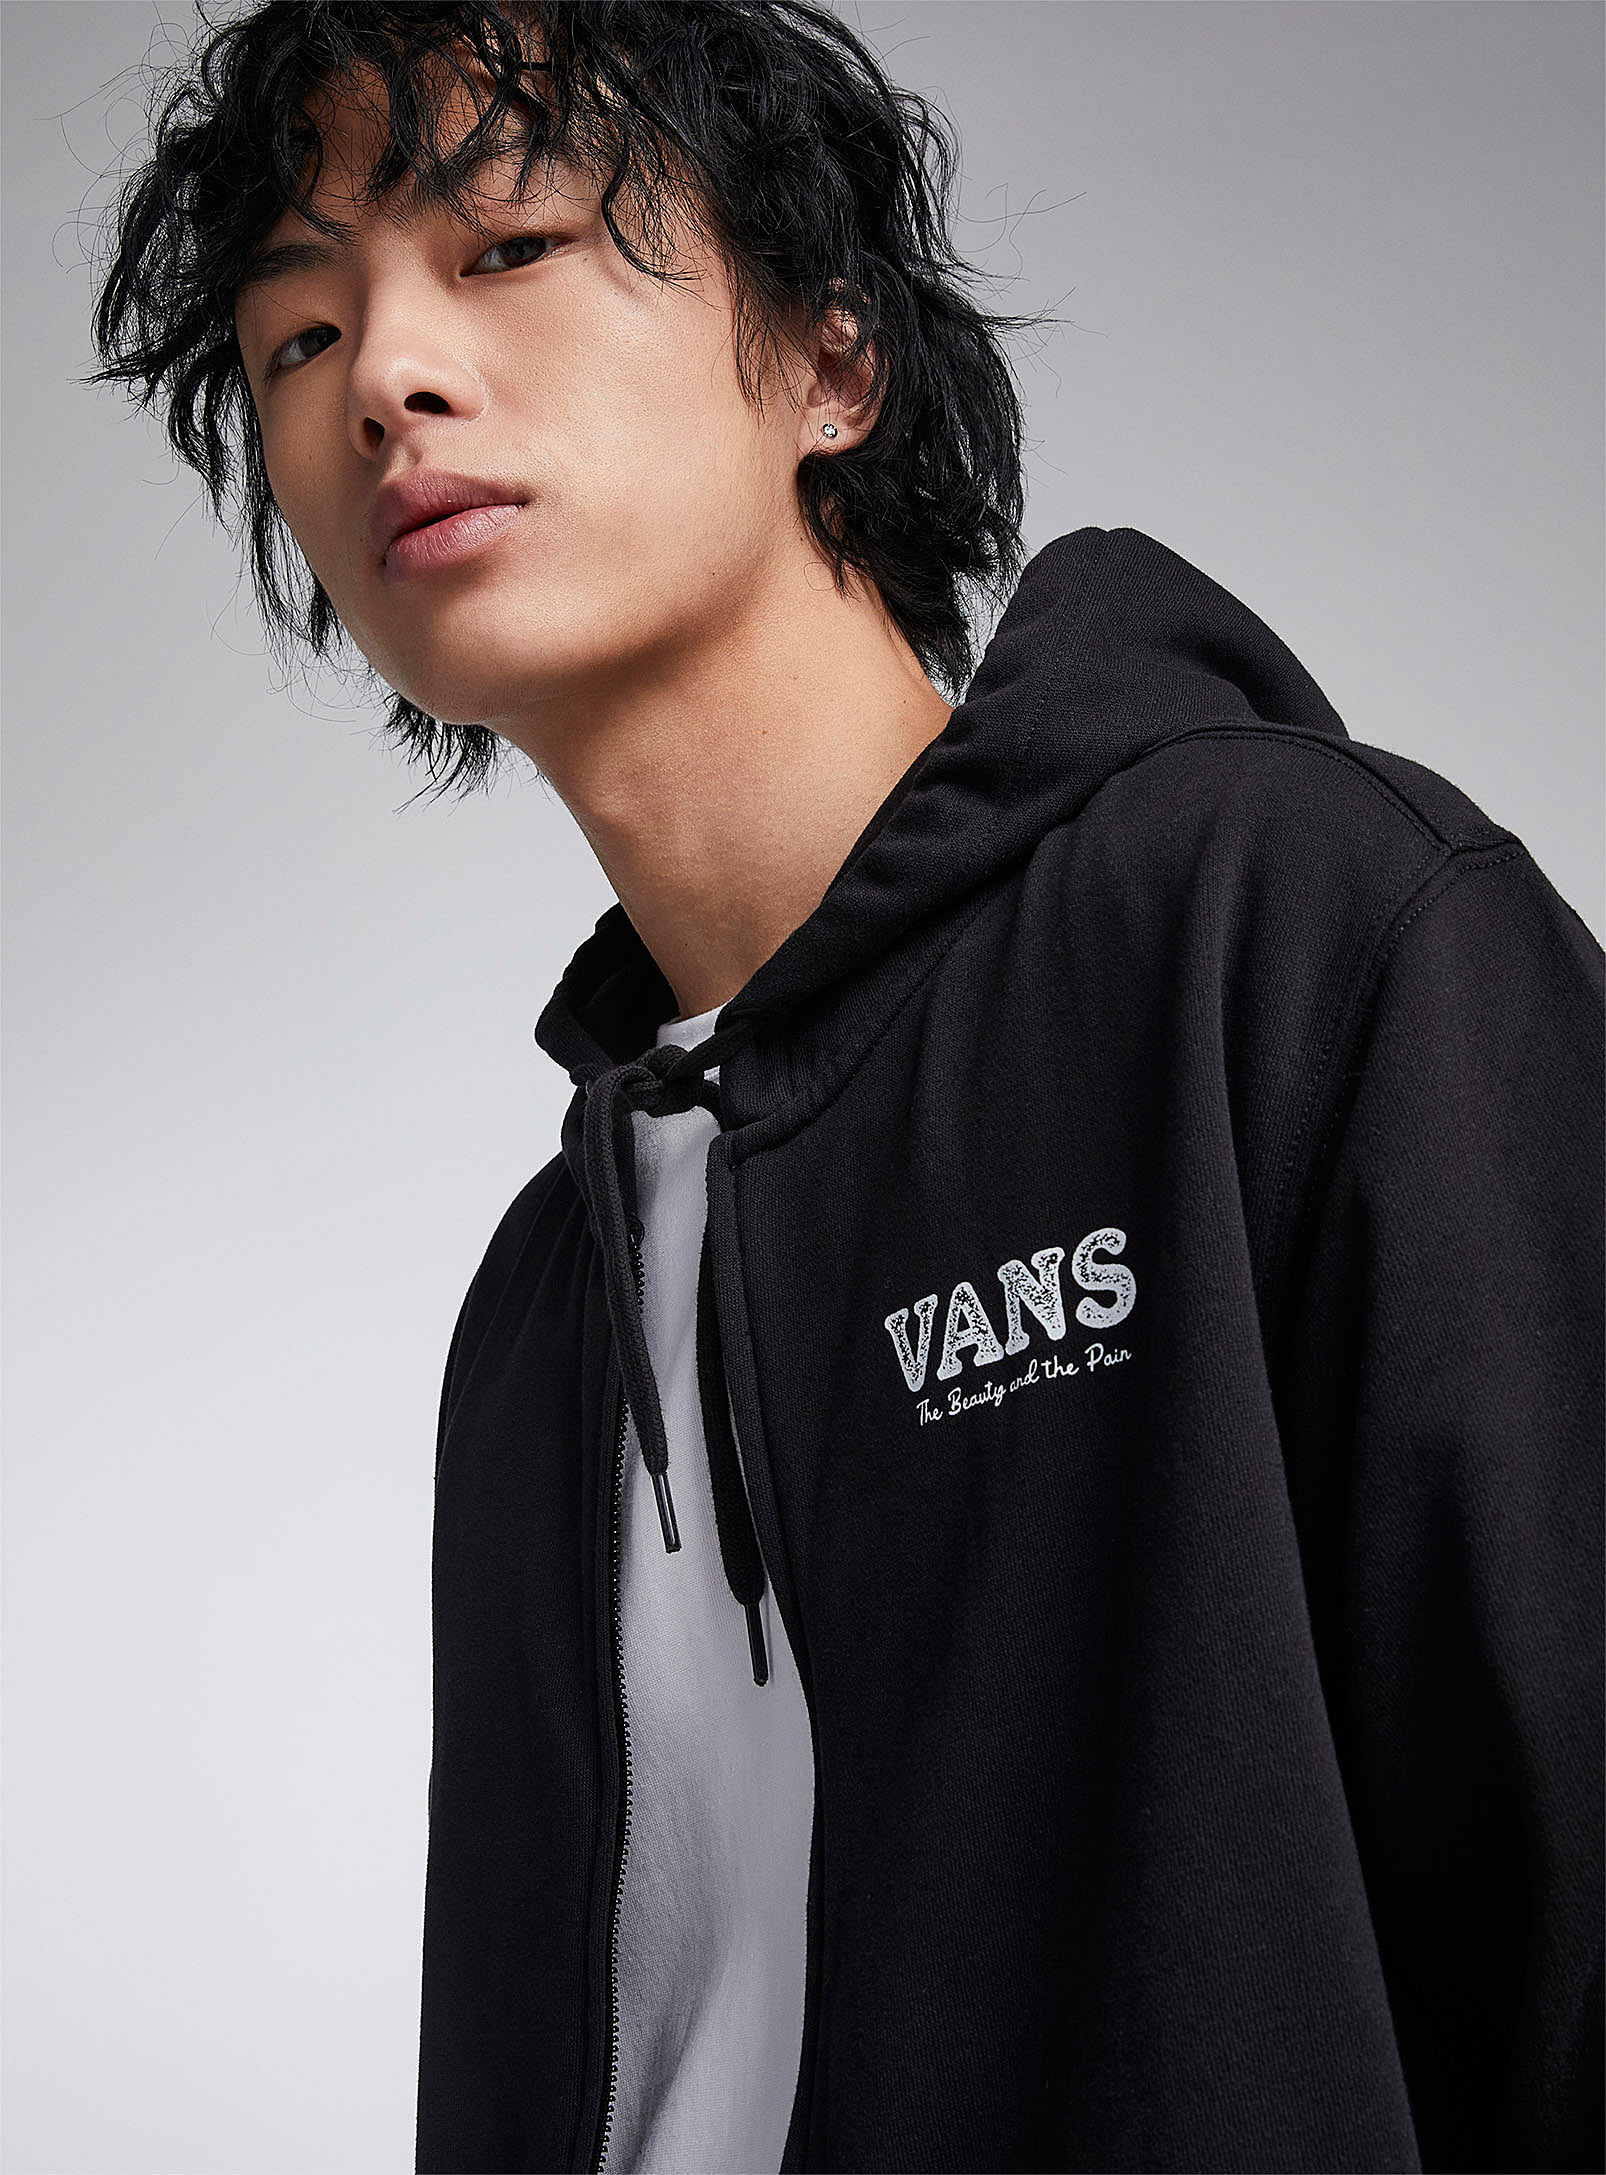 Vans - Men's Rosethorn zip hoodie